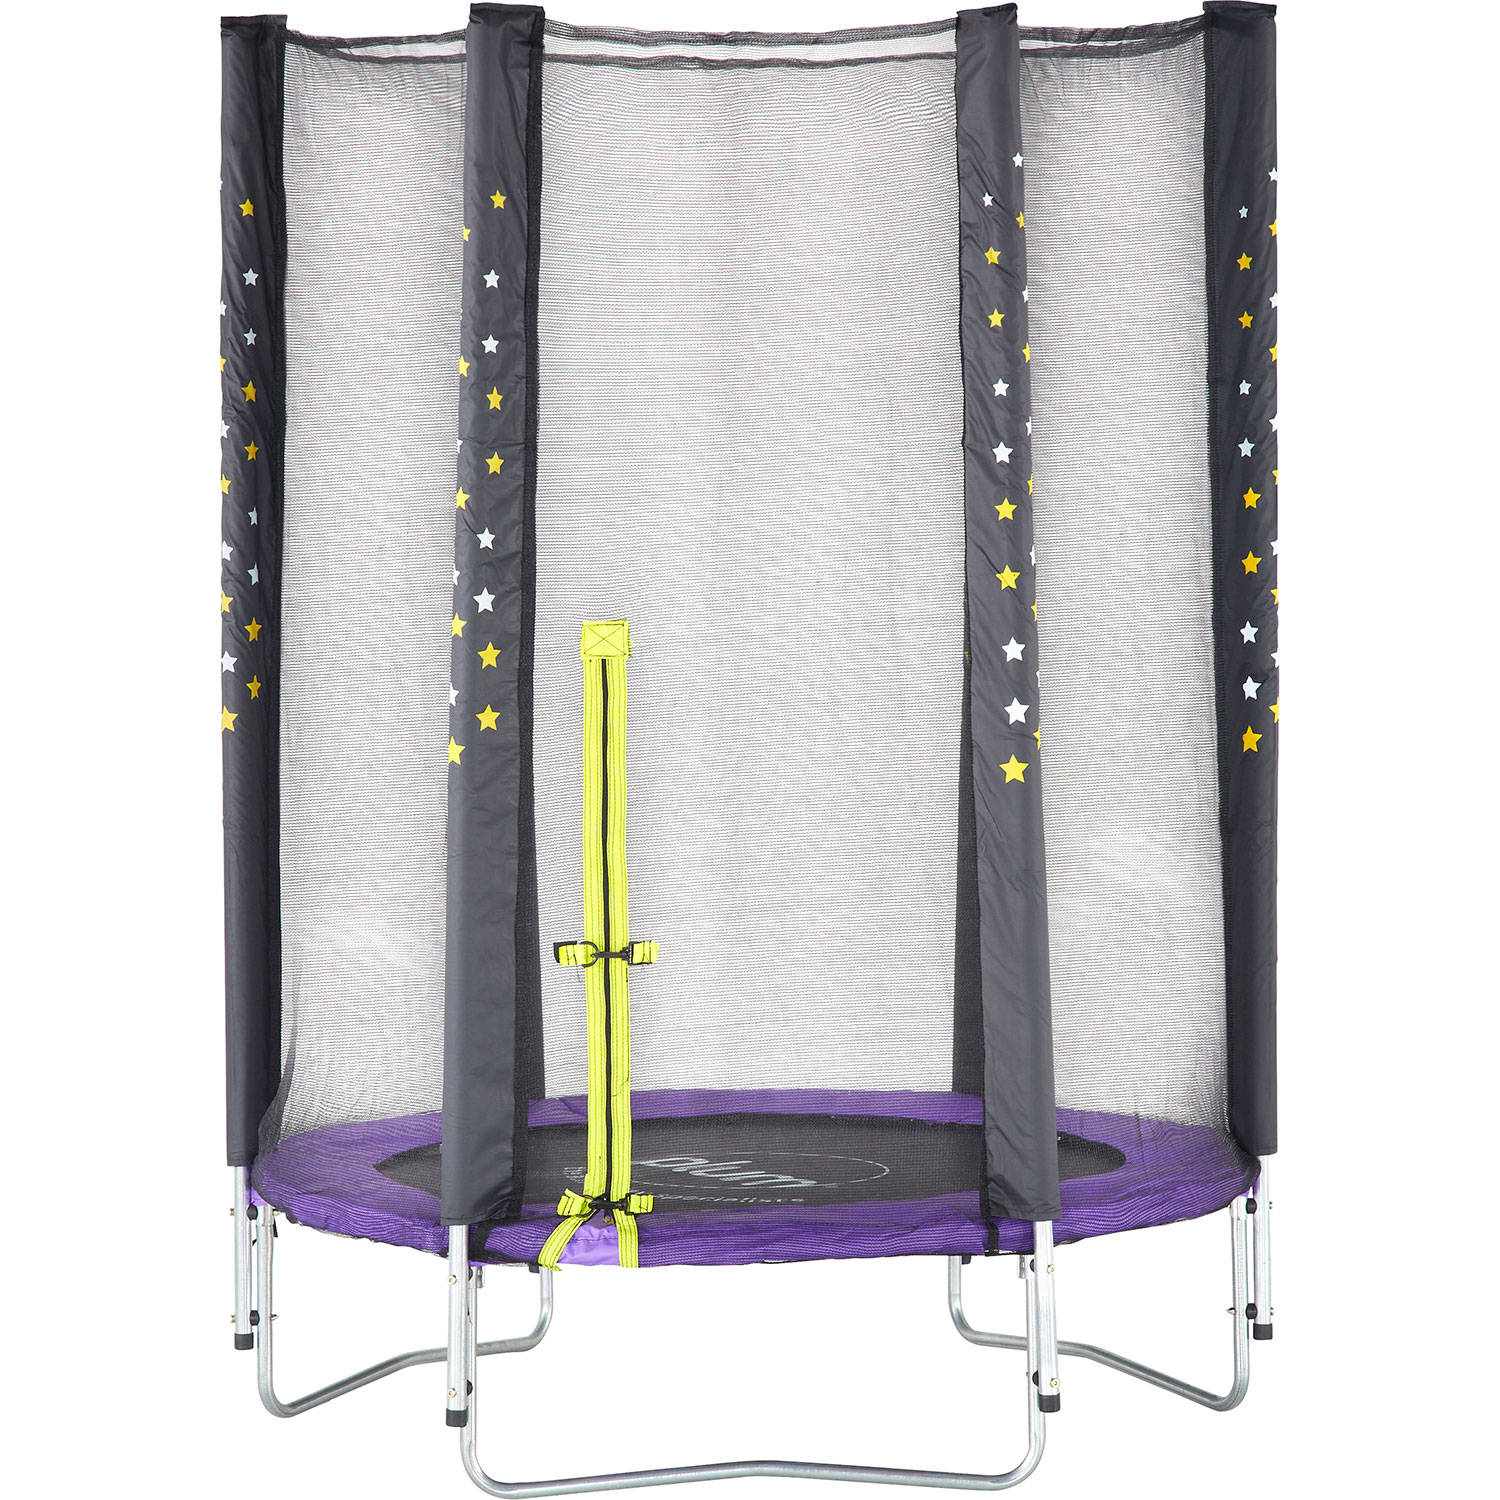 Plum Stardust trampoline & Enclosure SET